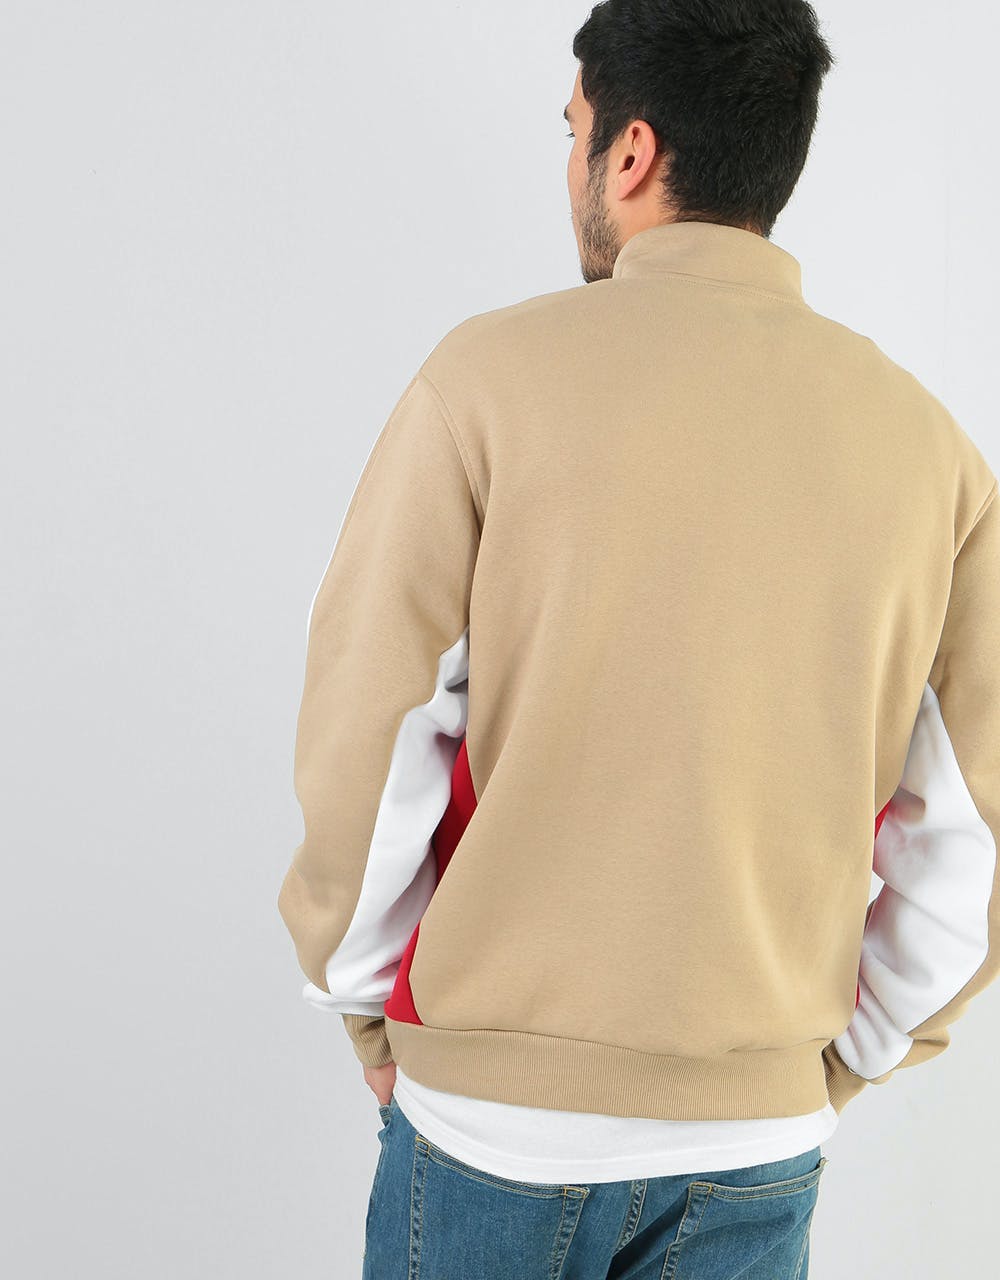 Adidas Modular 1/4 Zip Sweatshirt - Hemp/White/Power Red